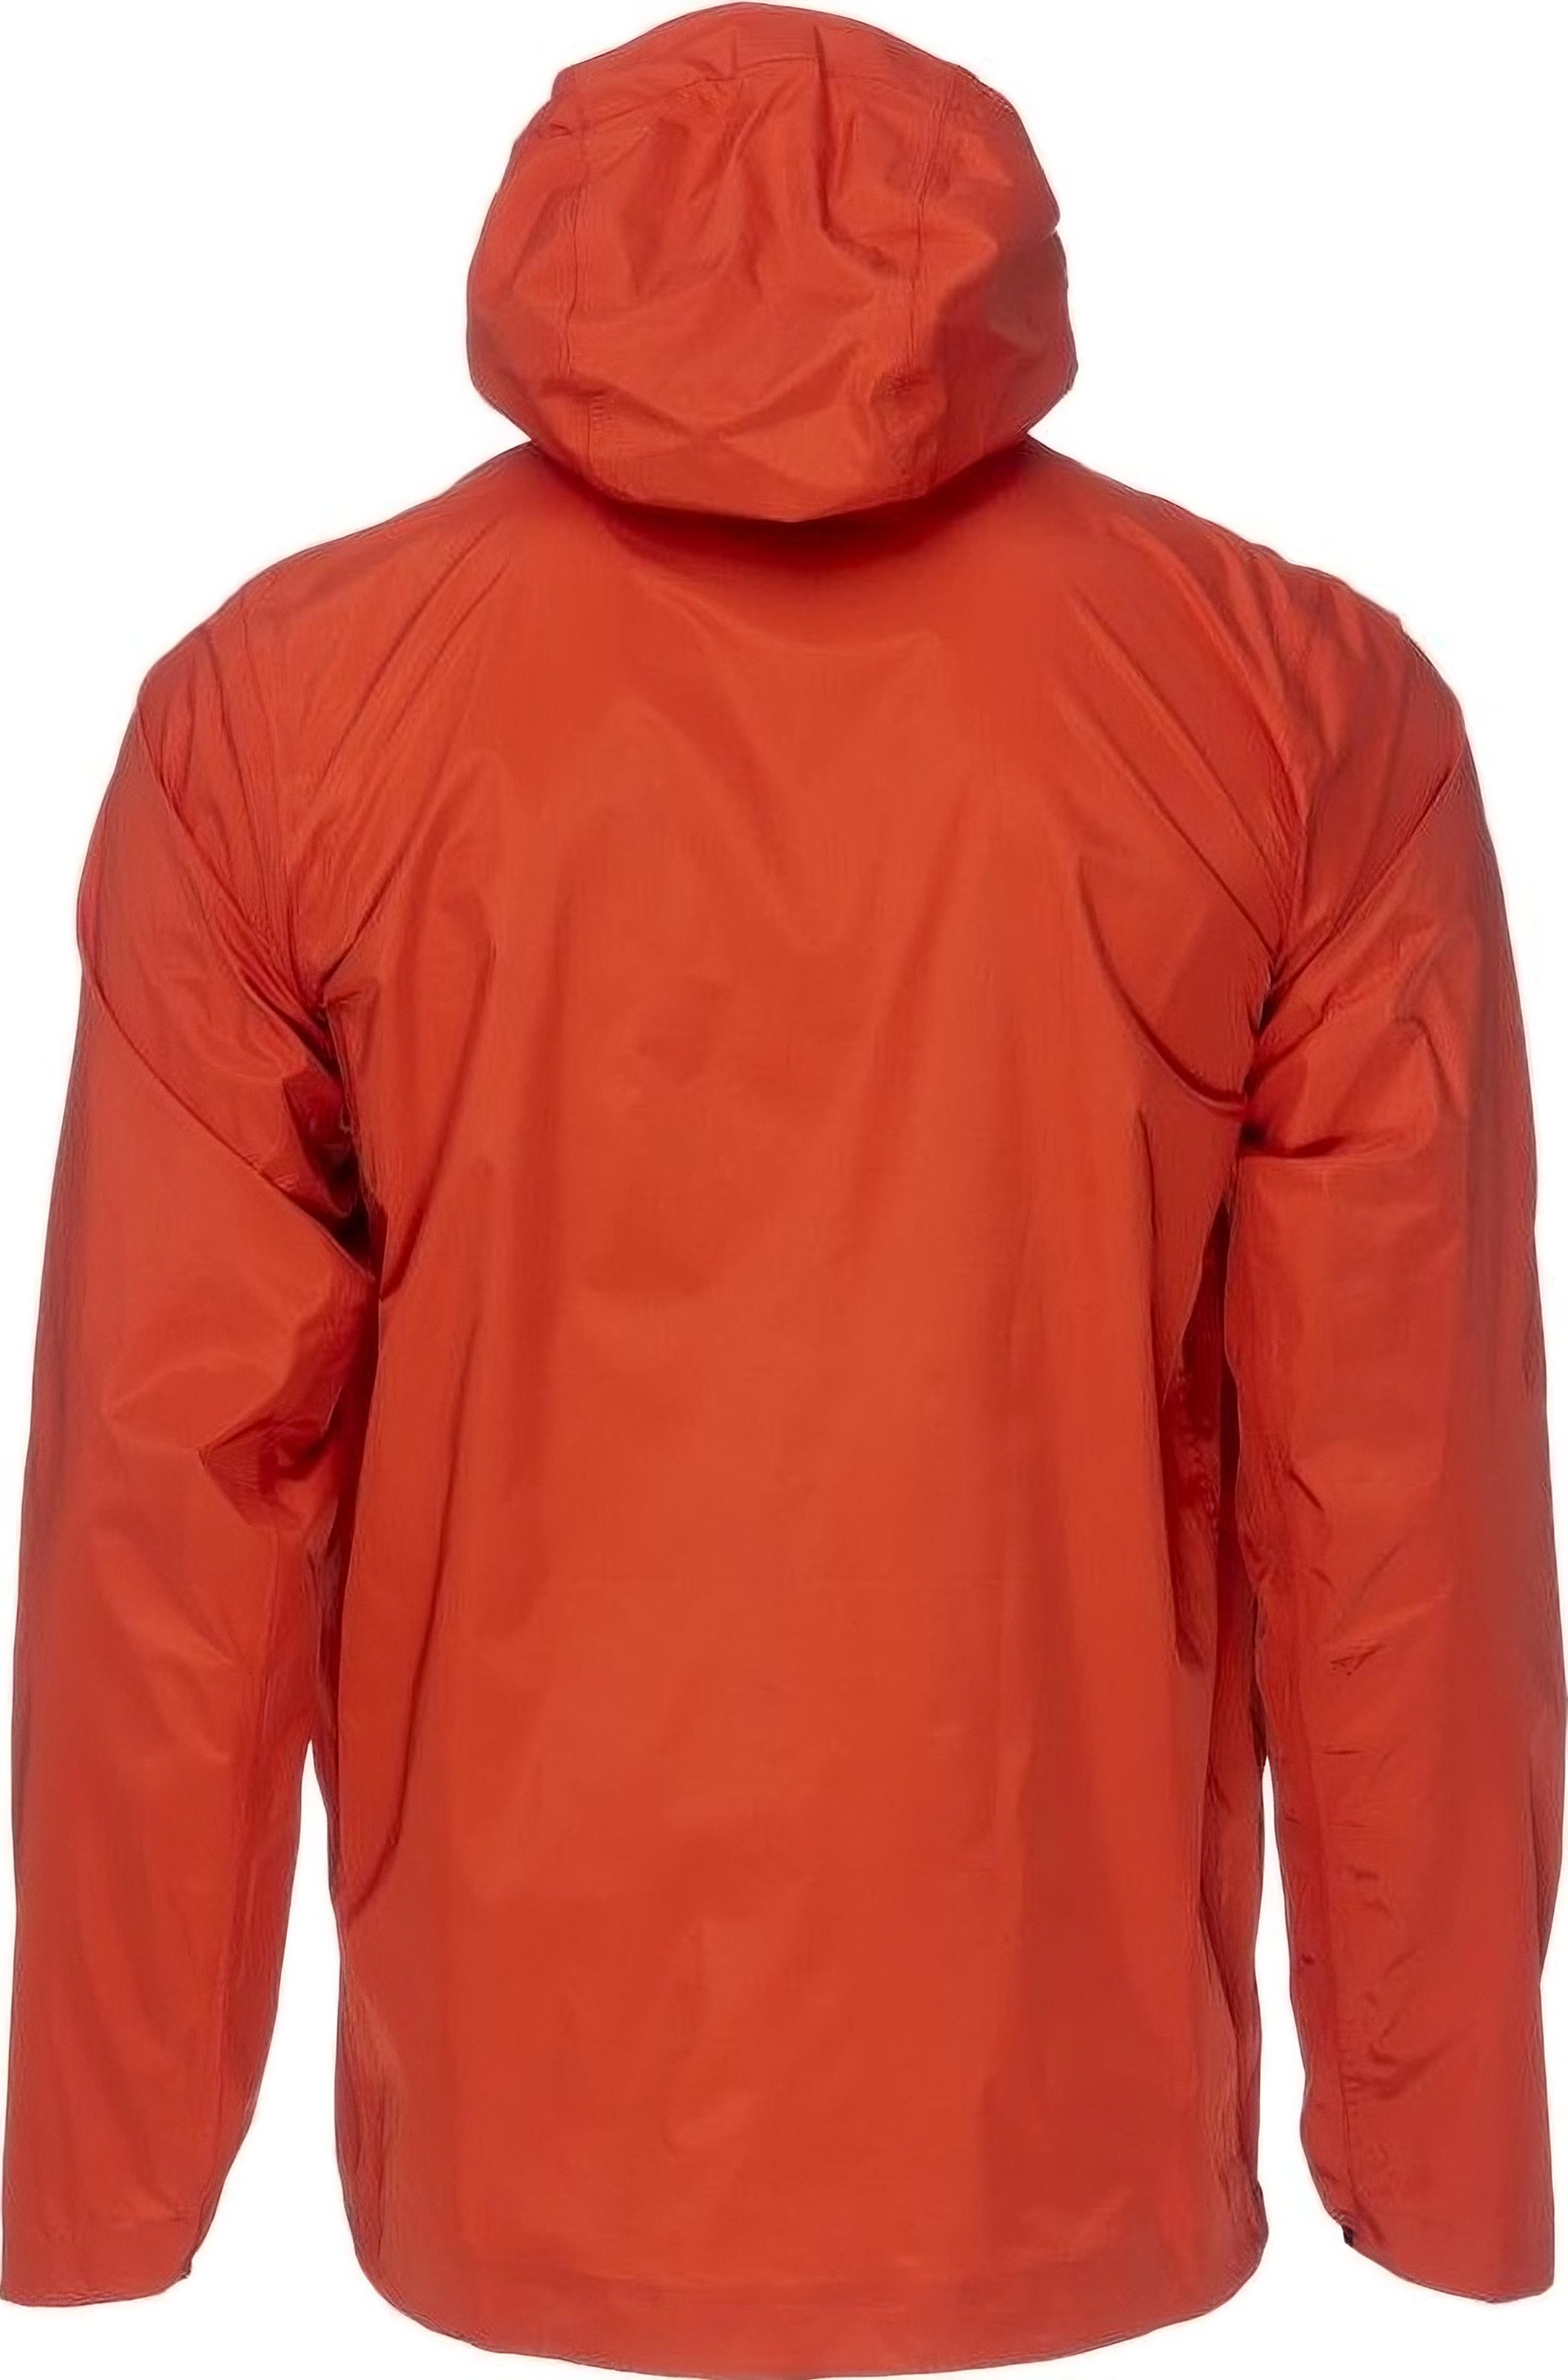 Куртка женская Turbat Isla Wmn orange red M красный фото 3